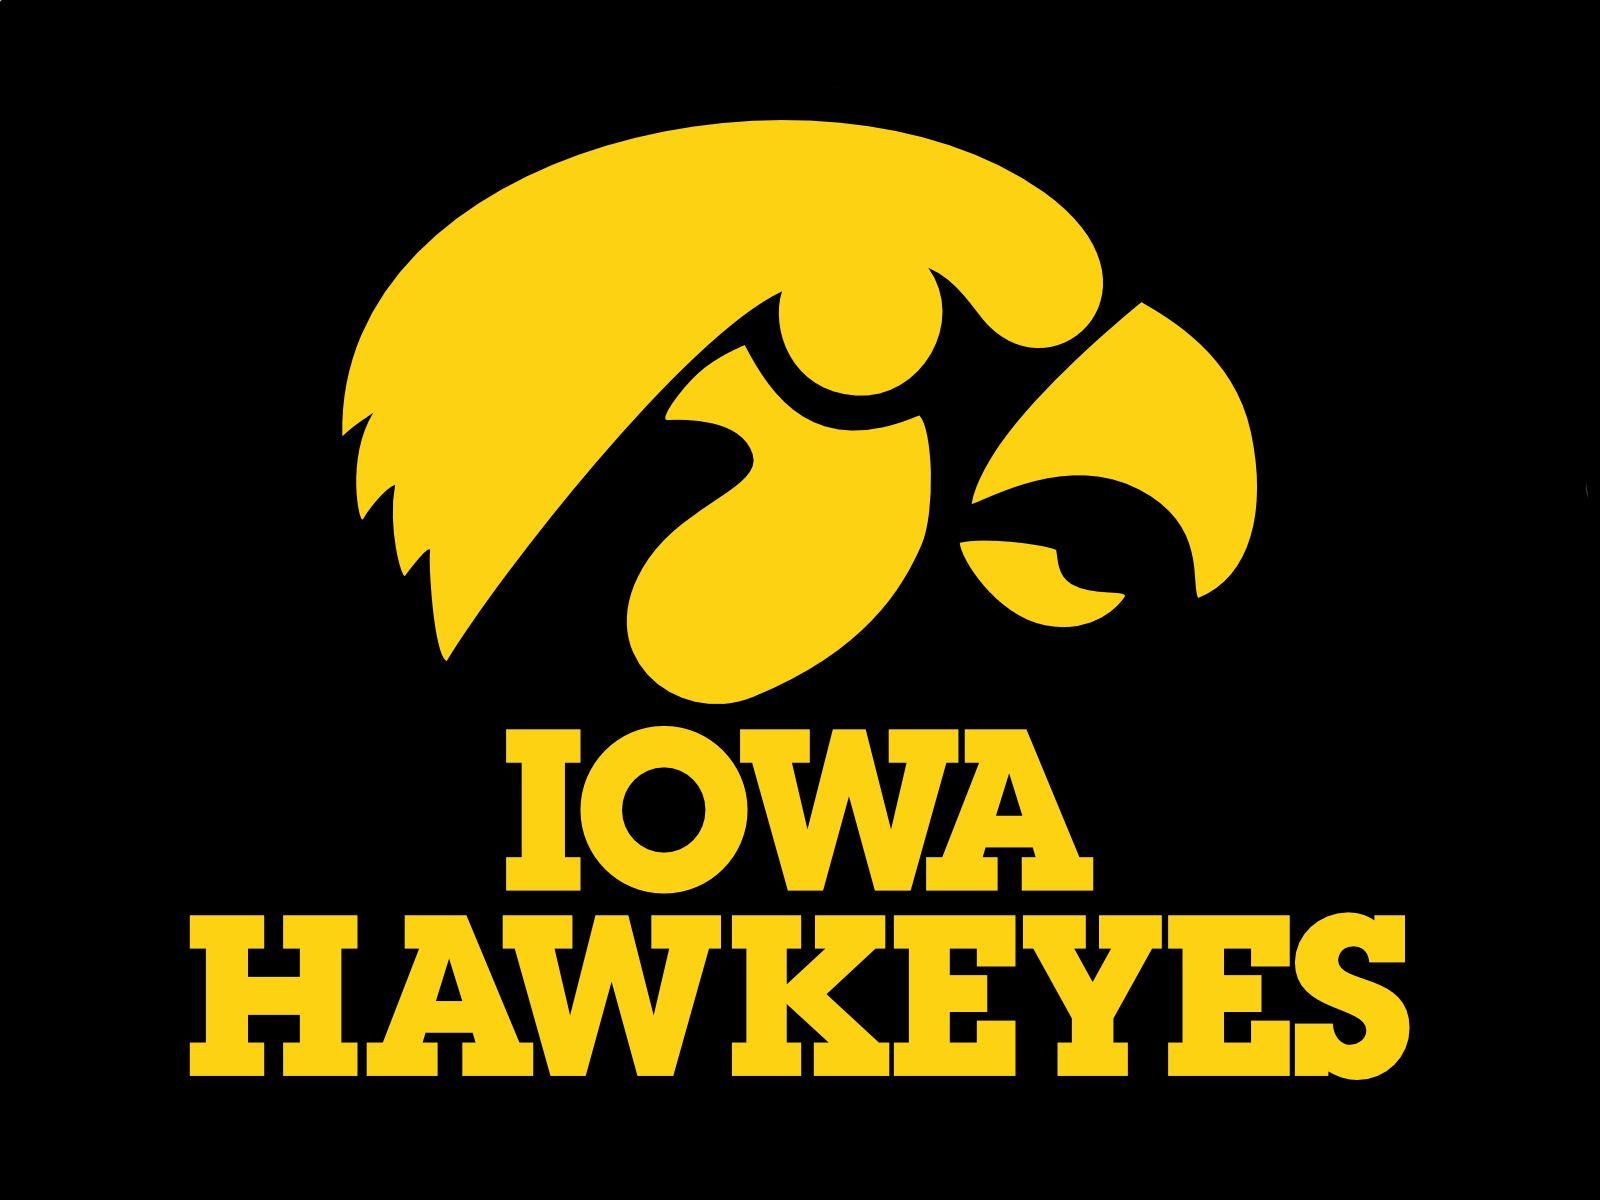 Iwoa Logo - Iowa Hawkeyes Logo, Iowa Hawkeyes Symbol, Meaning, History and Evolution